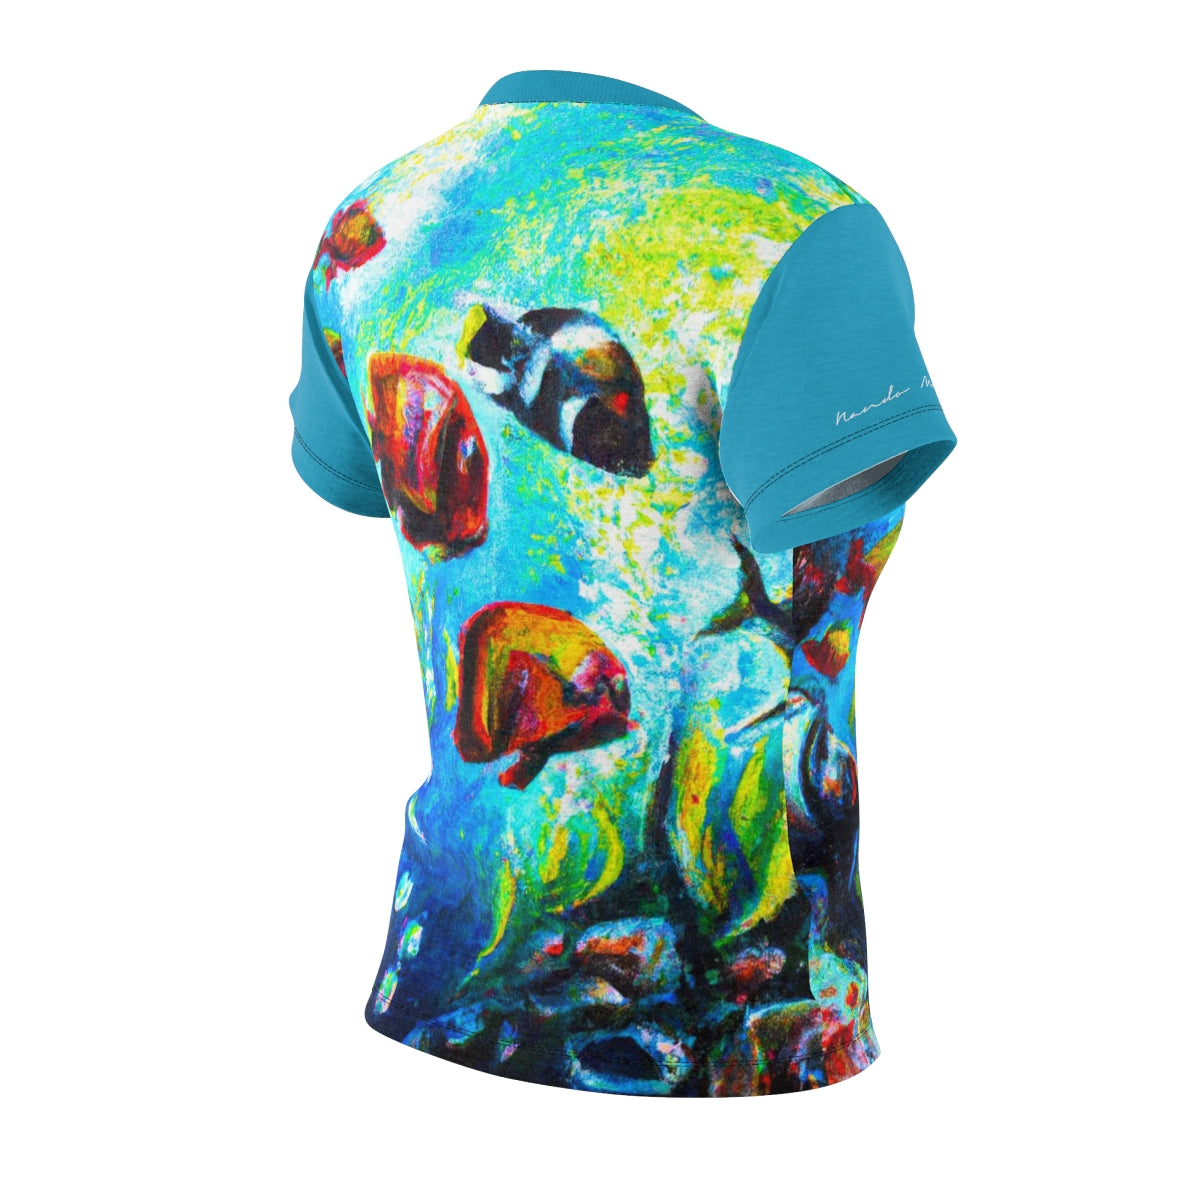 T-Shirt, Turquoise Tropical Aquarium